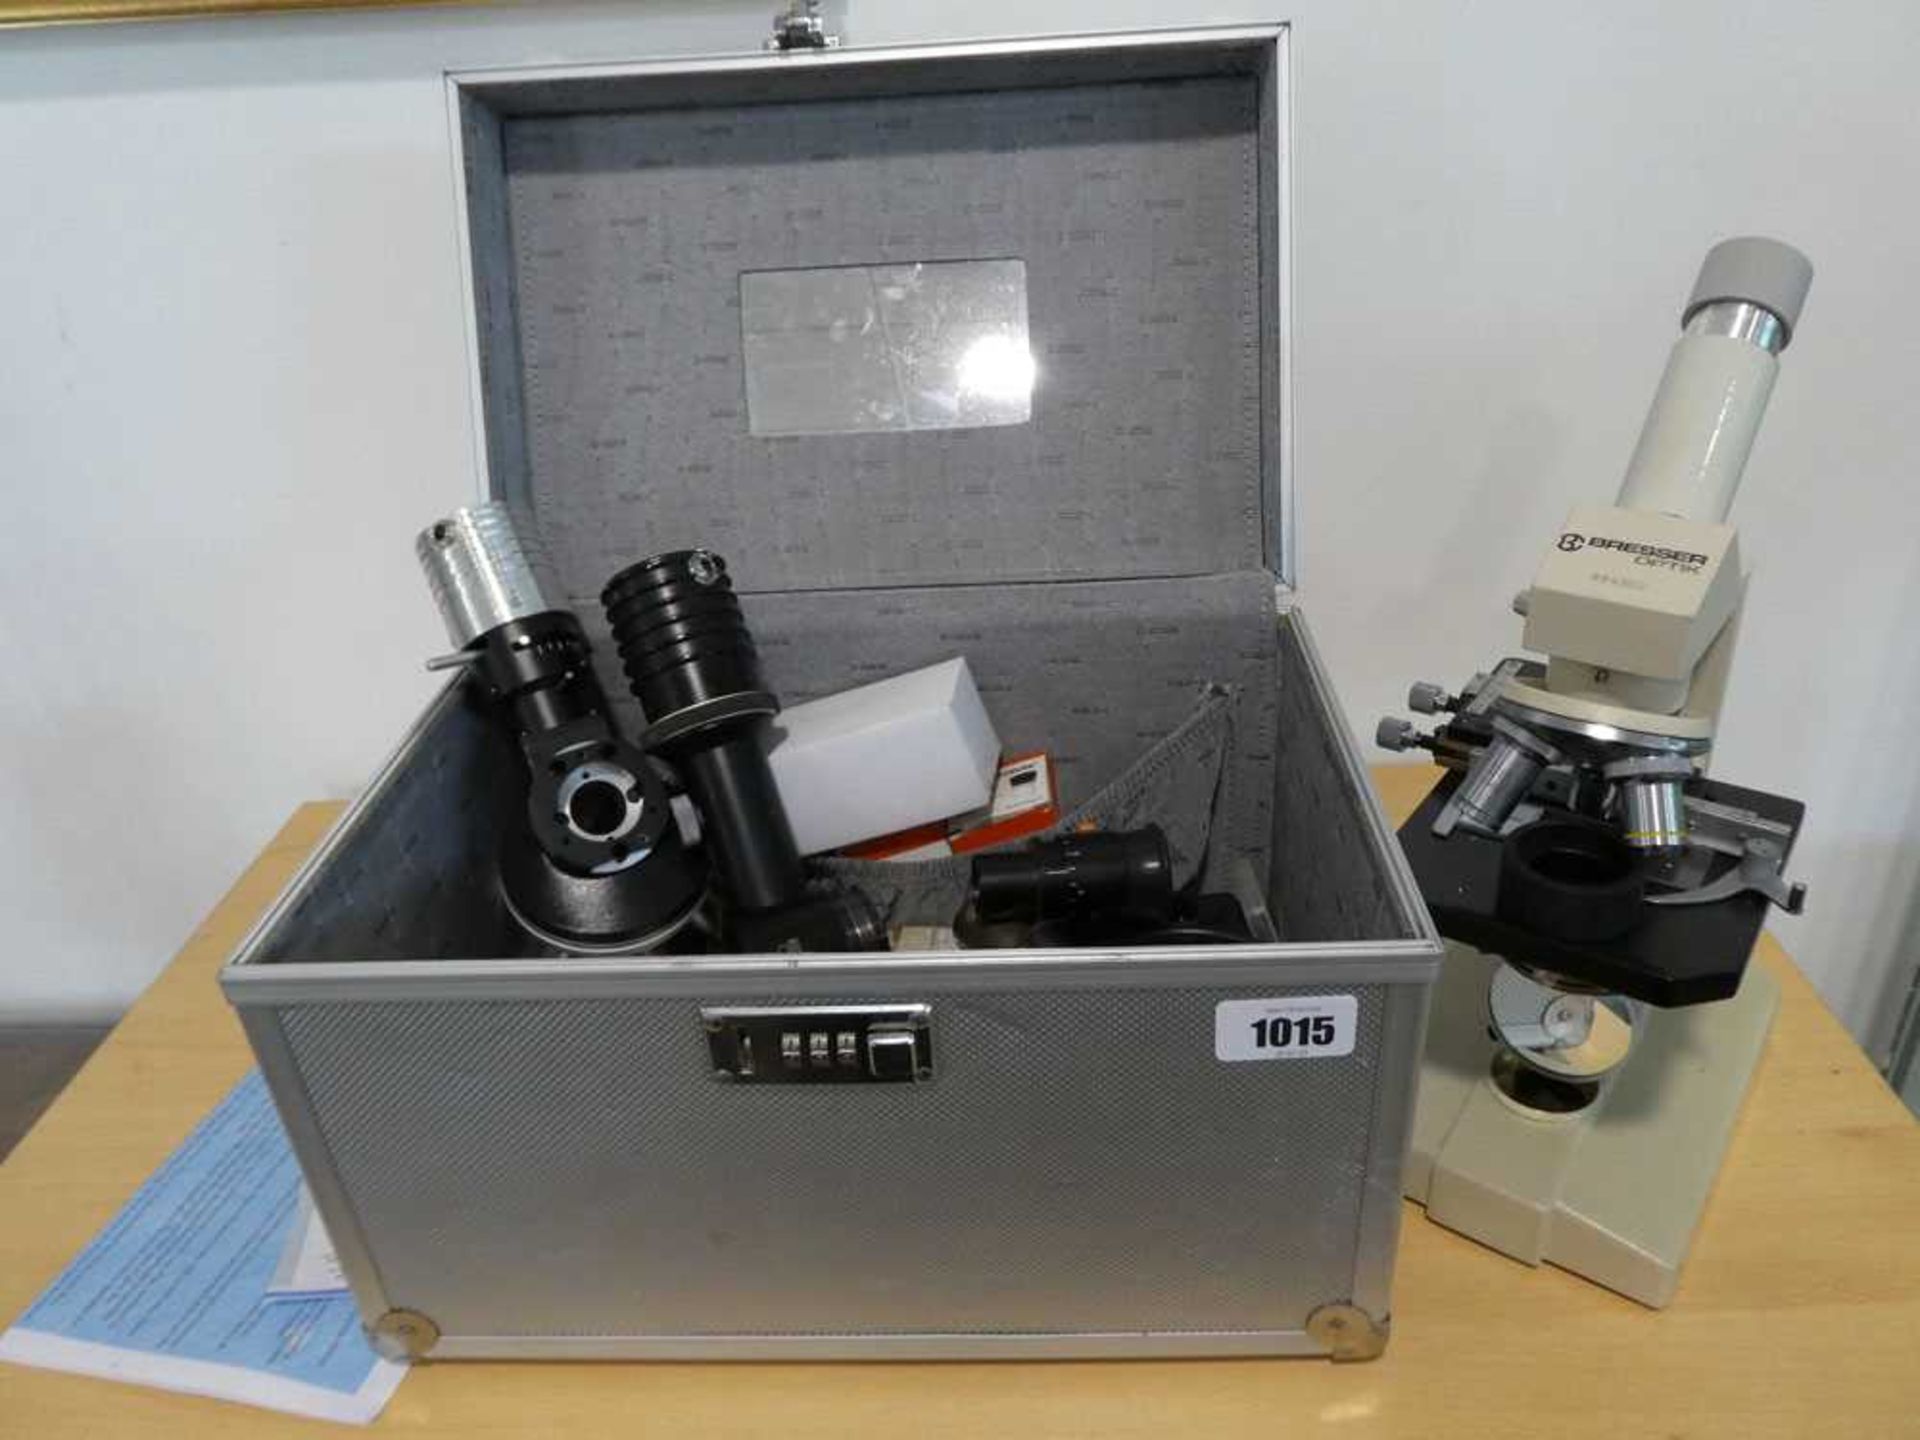 Bresser optik 894302 microscope in aluminum case with various accessories